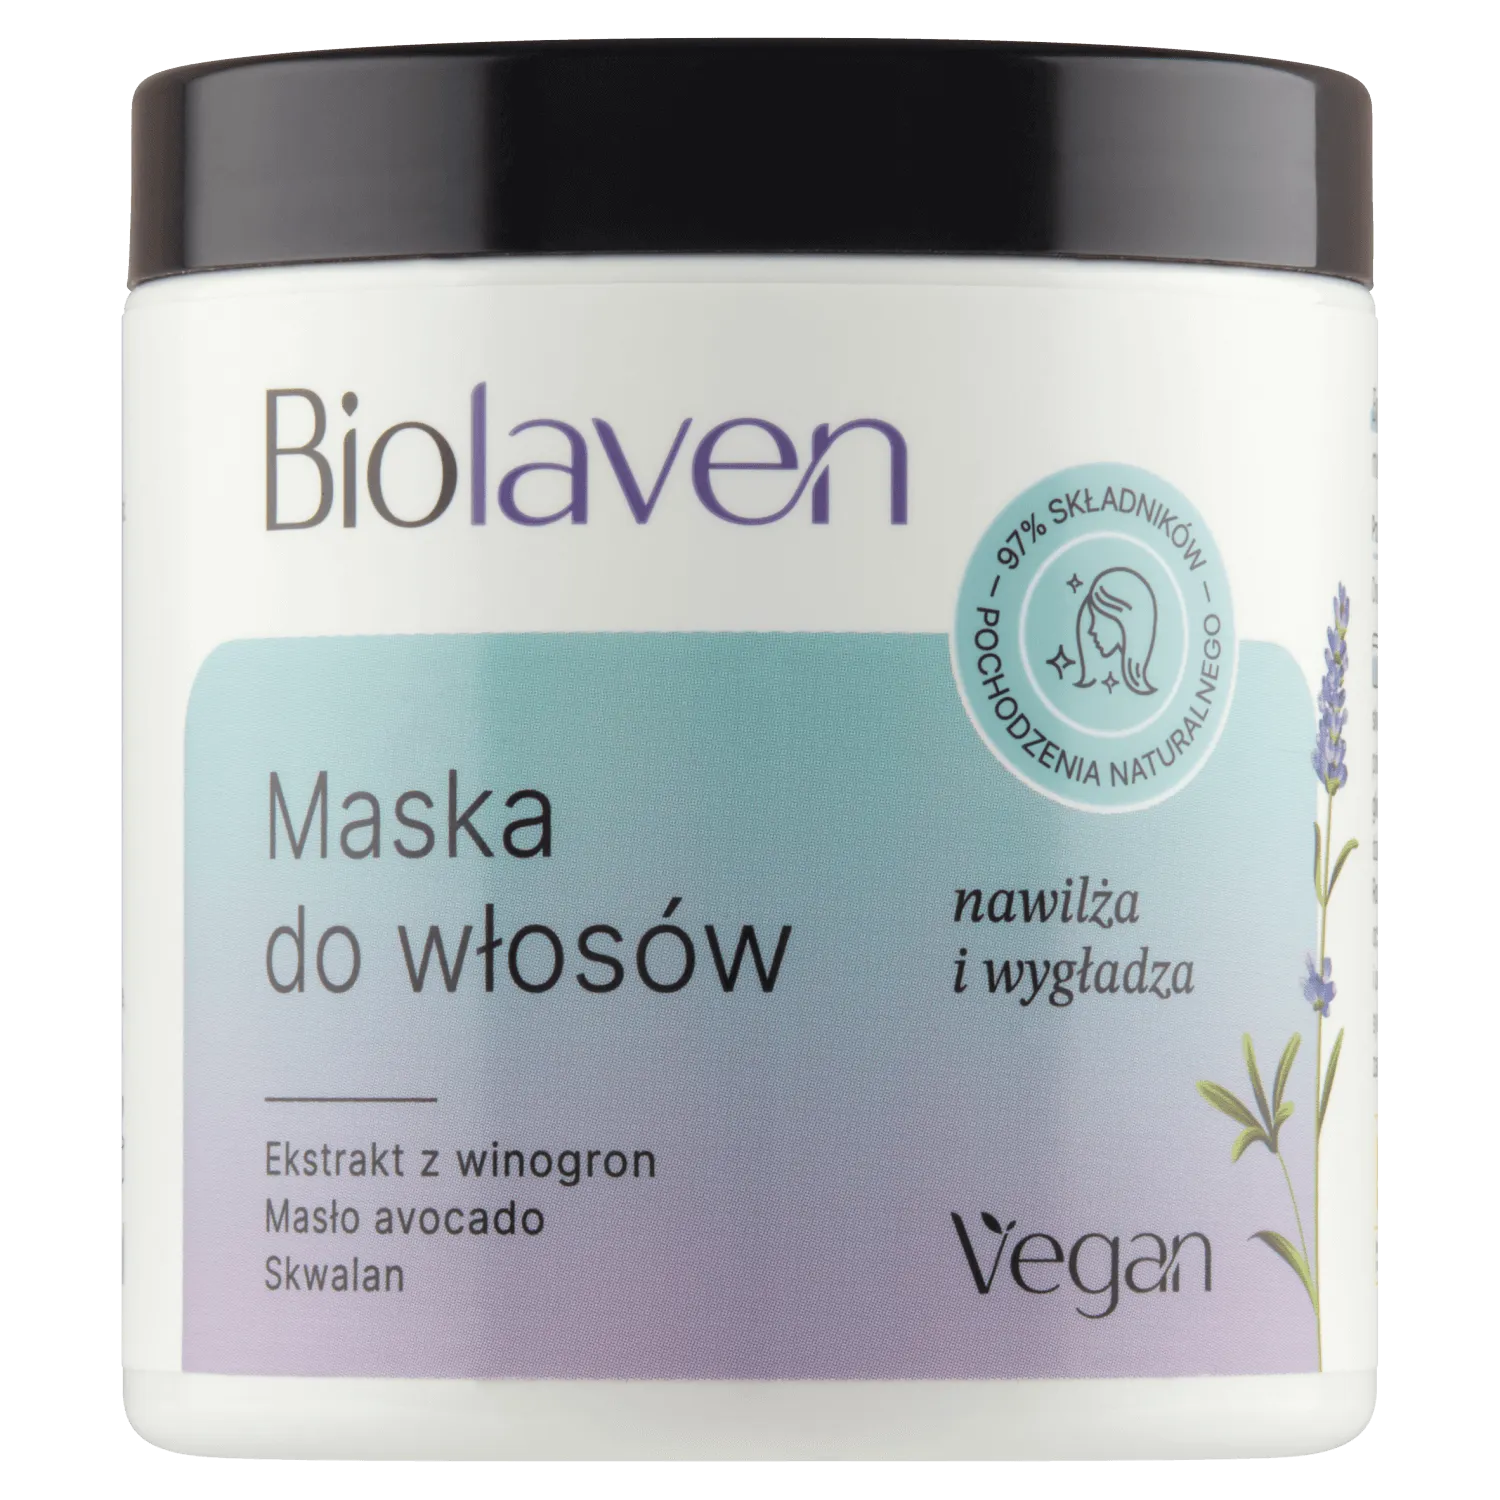 Biolaven organic Maska do włosów Olej z pestek winogron & Olejek lawendowy, 250 ml